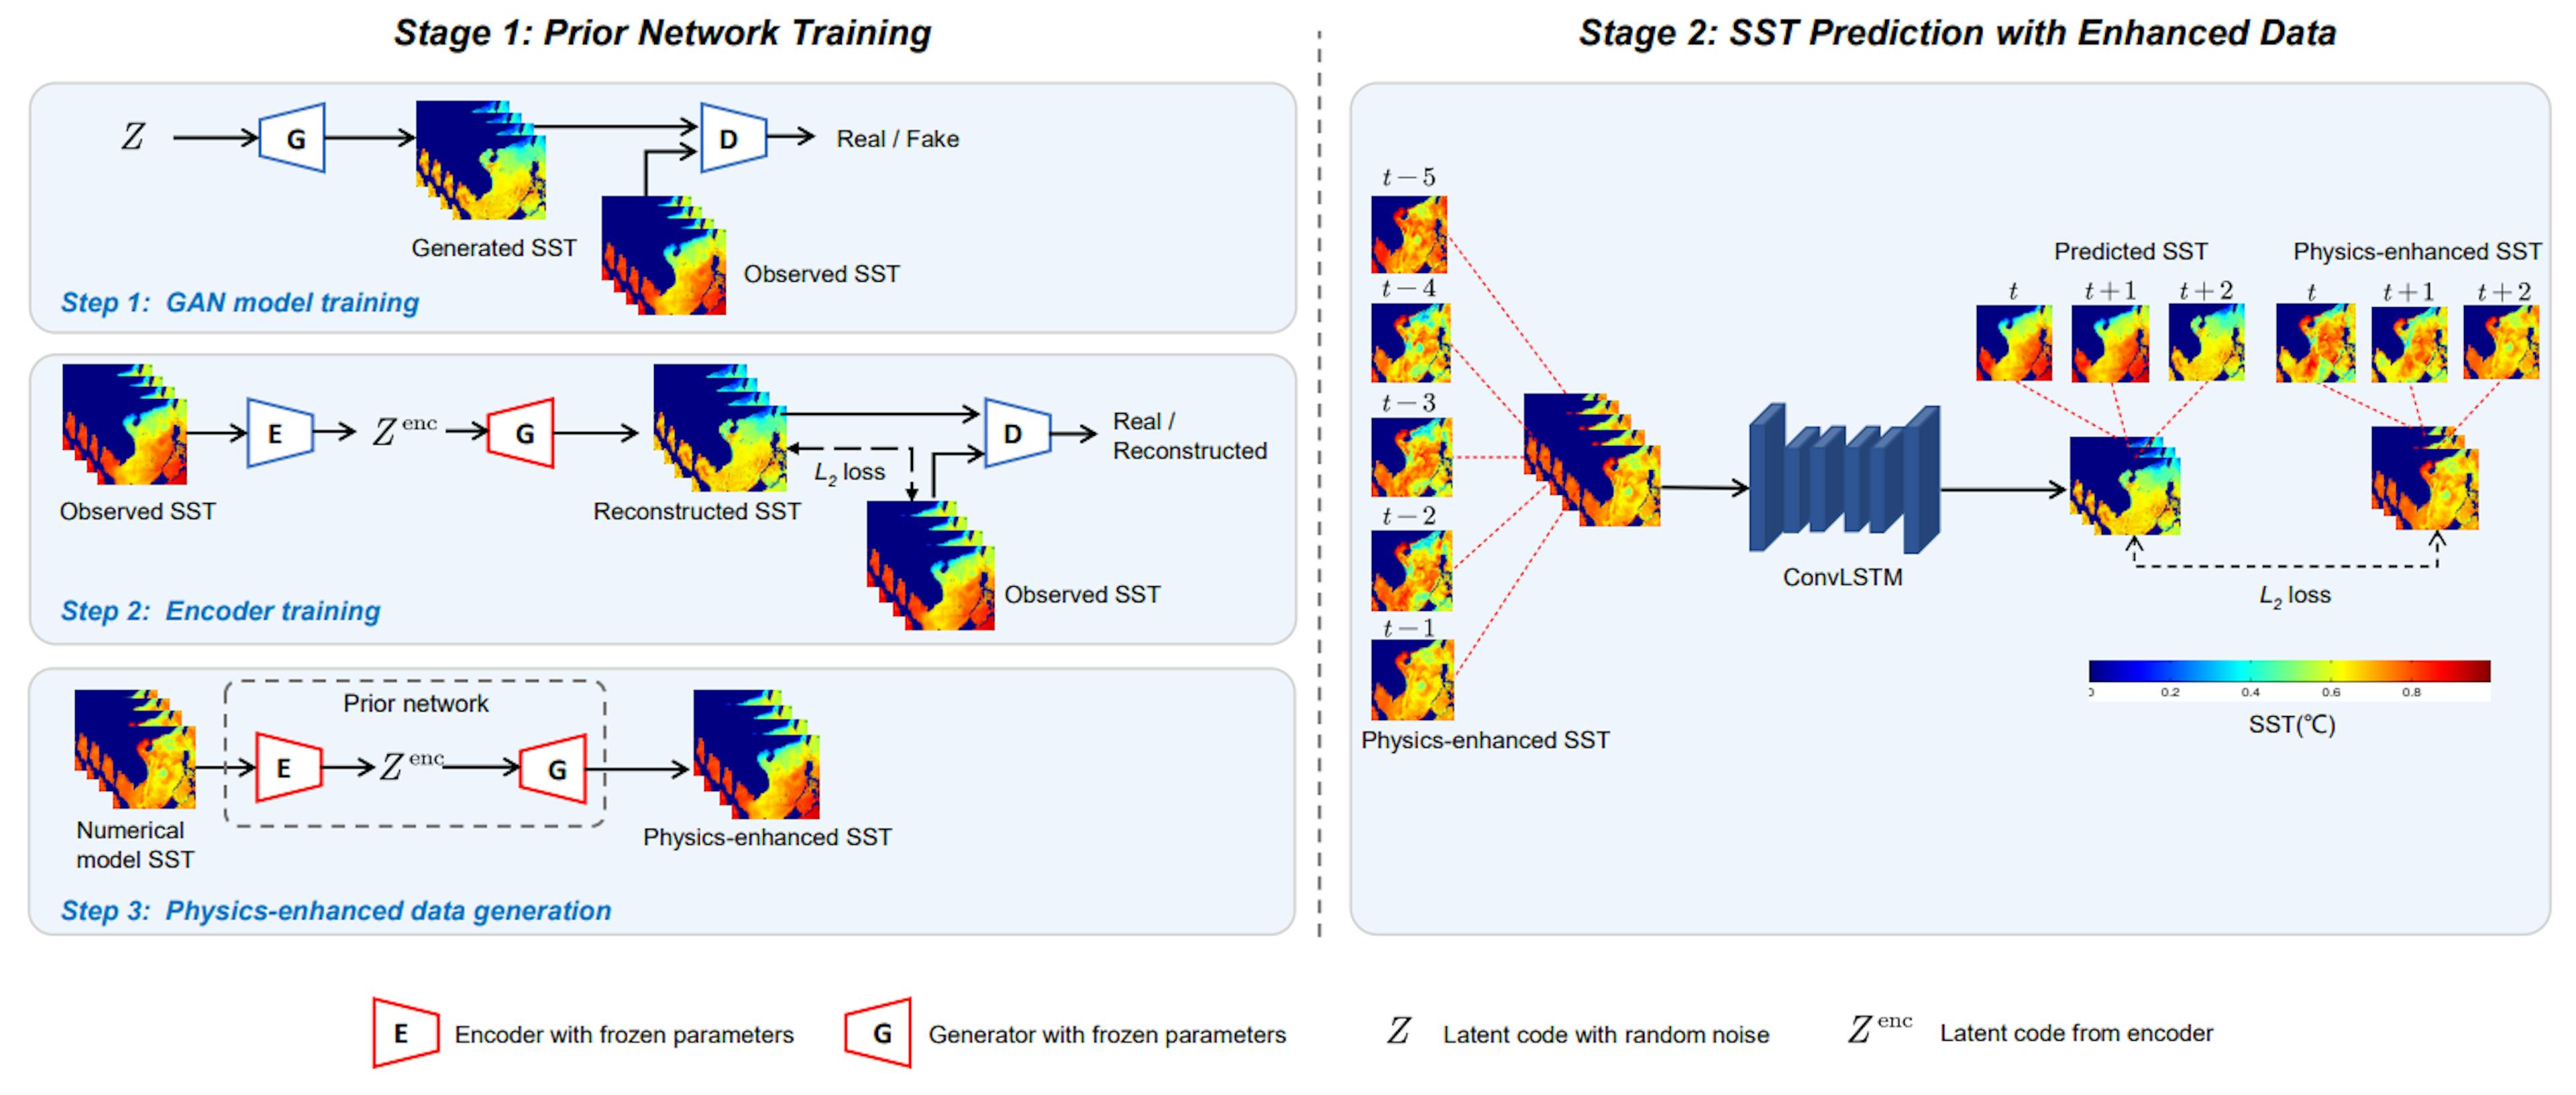 Hình 2. Minh họa phương pháp dự đoán SST được đề xuất. Nó bao gồm hai giai đoạn: Huấn luyện mạng trước và dự đoán SST với dữ liệu nâng cao. Trong giai đoạn đầu tiên, mạng trước đó được đào tạo để tạo SST tăng cường vật lý. Trong giai đoạn thứ hai, SST tăng cường vật lý được sử dụng để dự đoán SST thông qua ConvLSTM.